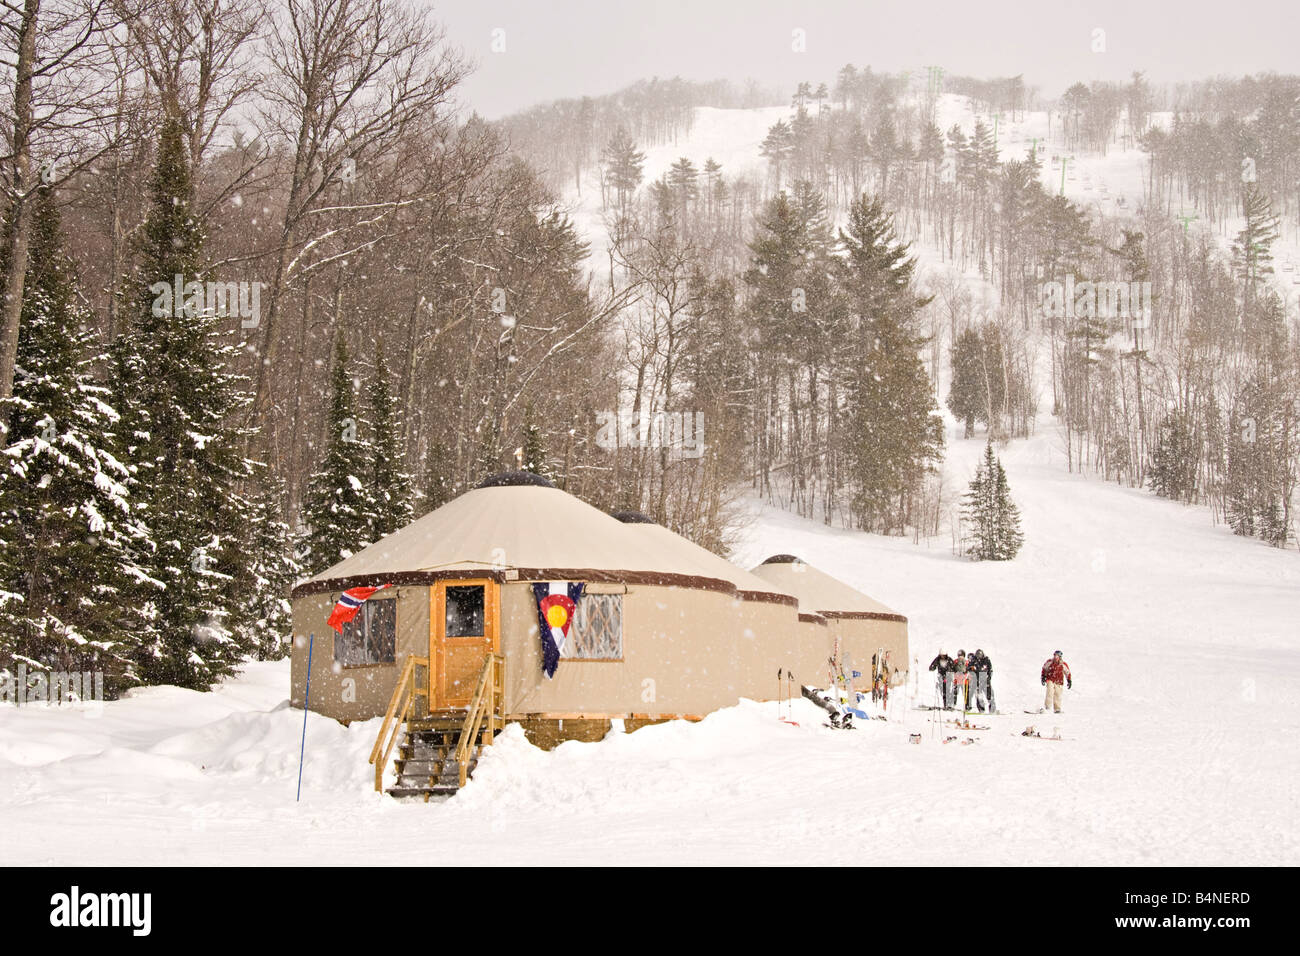 Yurts son utilizados para alojamiento en El Monte Bohemia ski resort de Michigans Península Superior Foto de stock